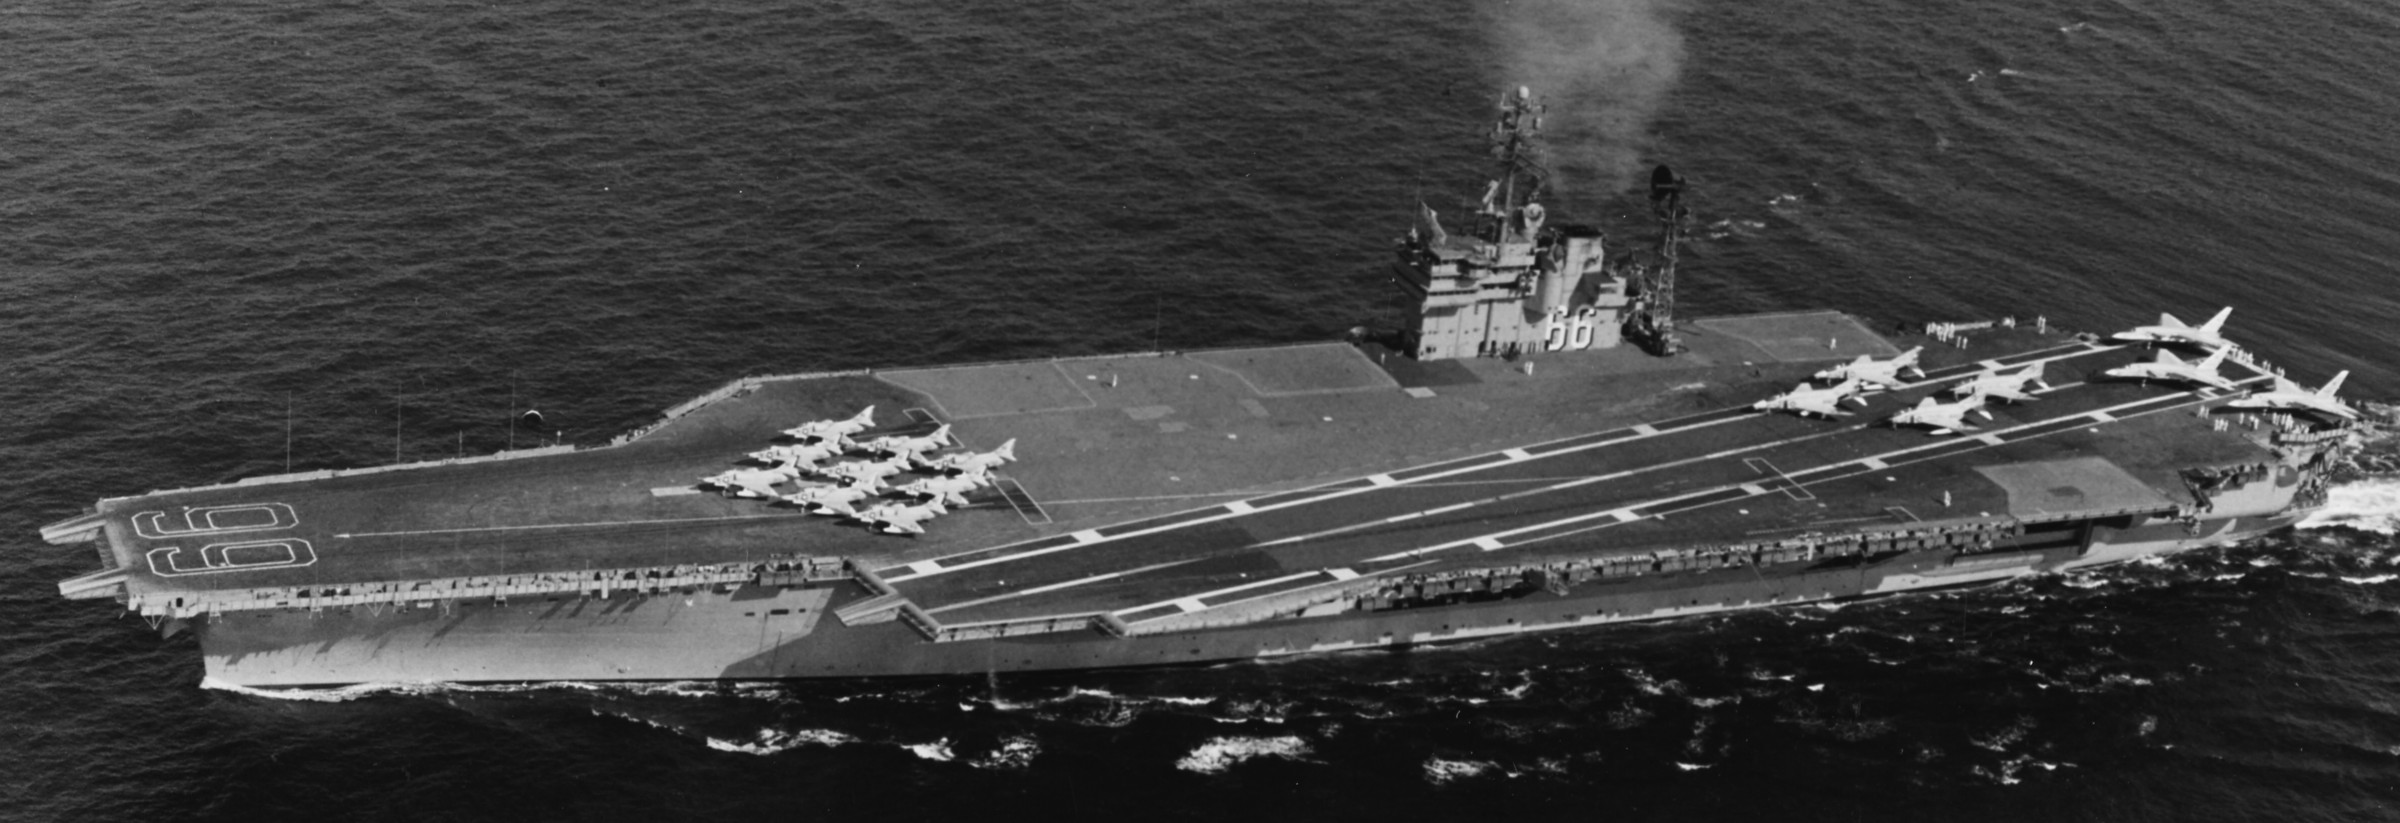 cv-66 uss america kitty hawk class aircraft carrier air wing cvw-6 us navy 02